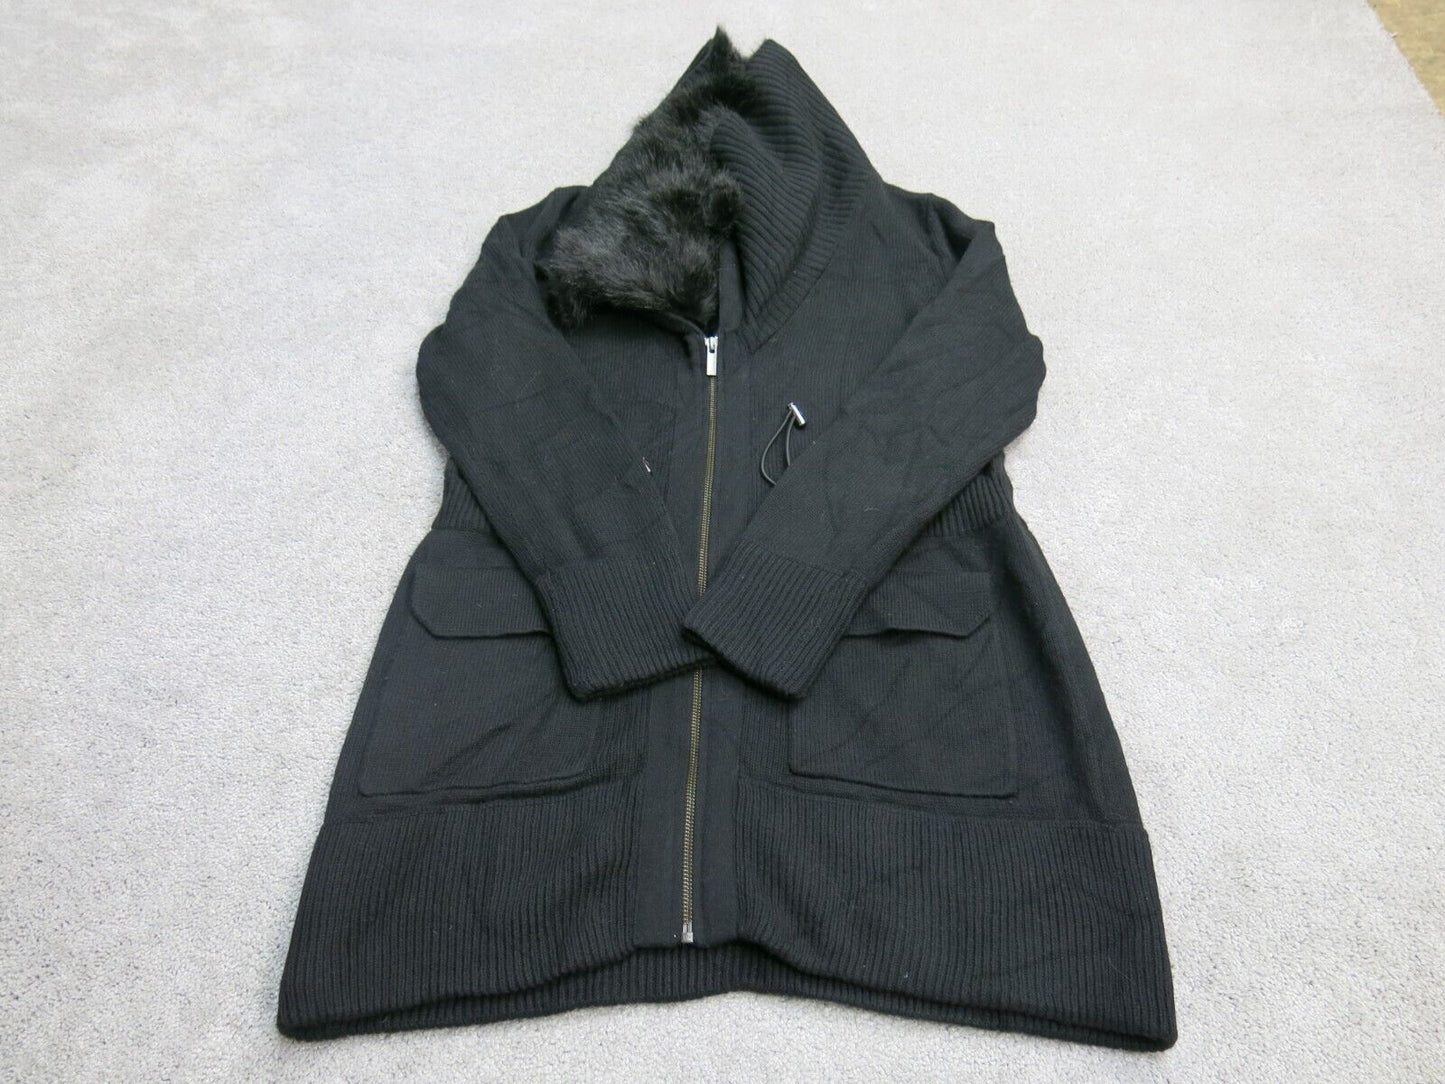 Banana Republic Womens Parka Sweater Coat Jacket Long Sleeve Black Size Small